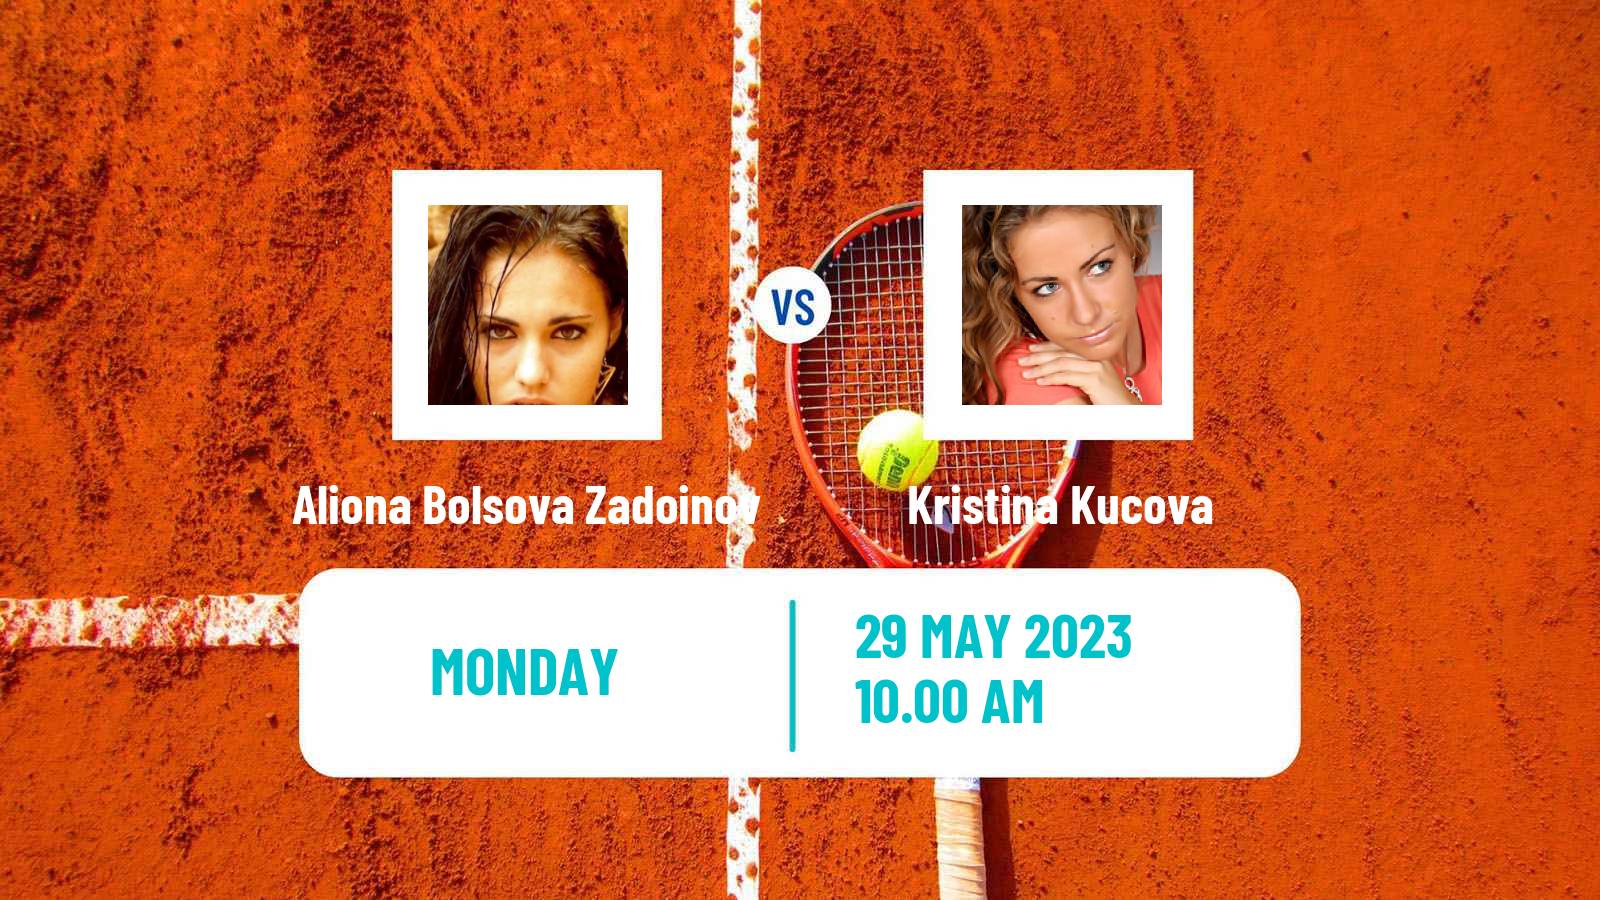 Tennis WTA Roland Garros Aliona Bolsova Zadoinov - Kristina Kucova